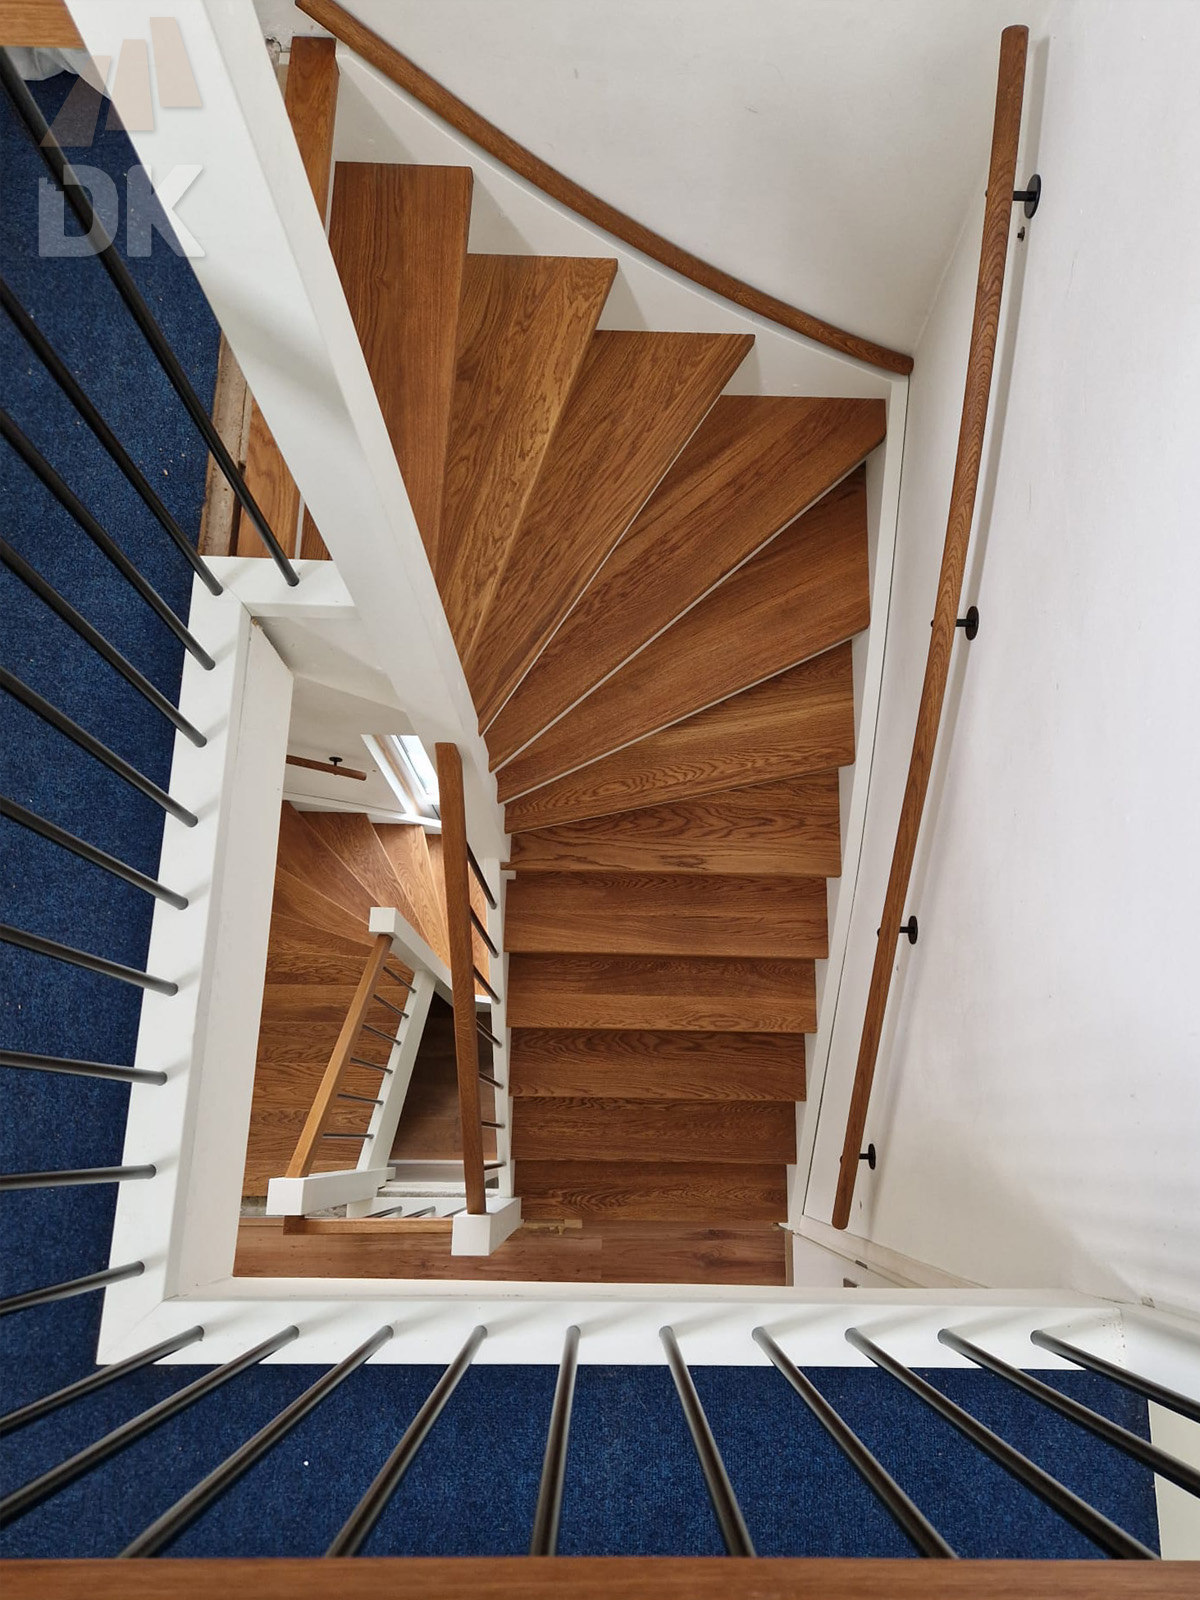 2 Stalen trappen vervangen door kwarttrappen - Foto 1